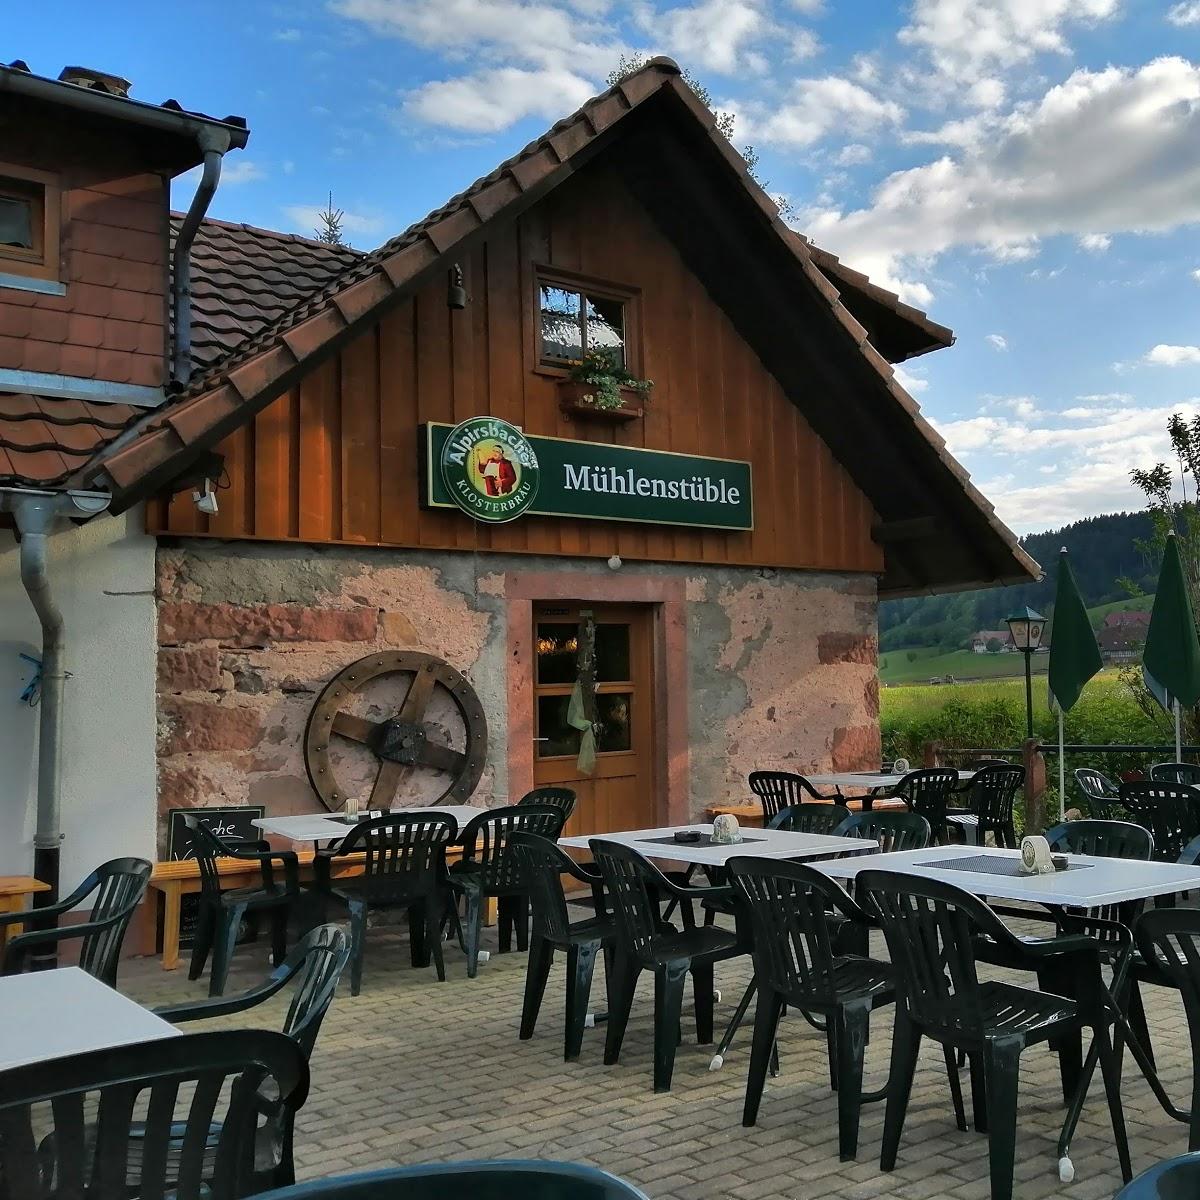 Restaurant "Mühlenstüble Vesperstube" in  Nordrach